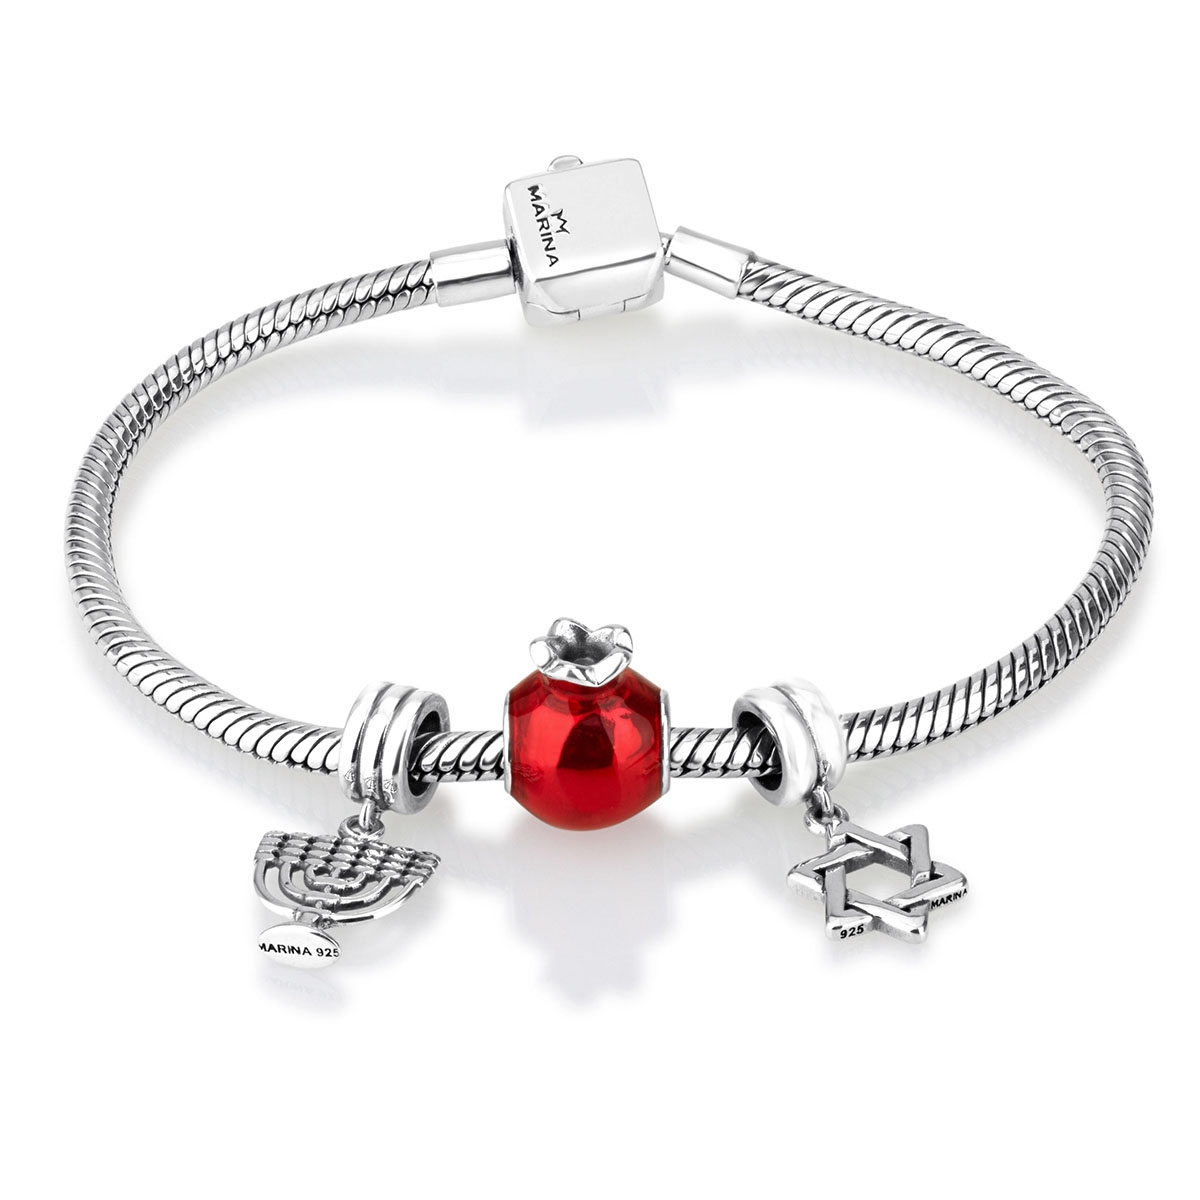 Marina Jewelry Silver Charm Bracelet with 3 Jewish Charms - 1